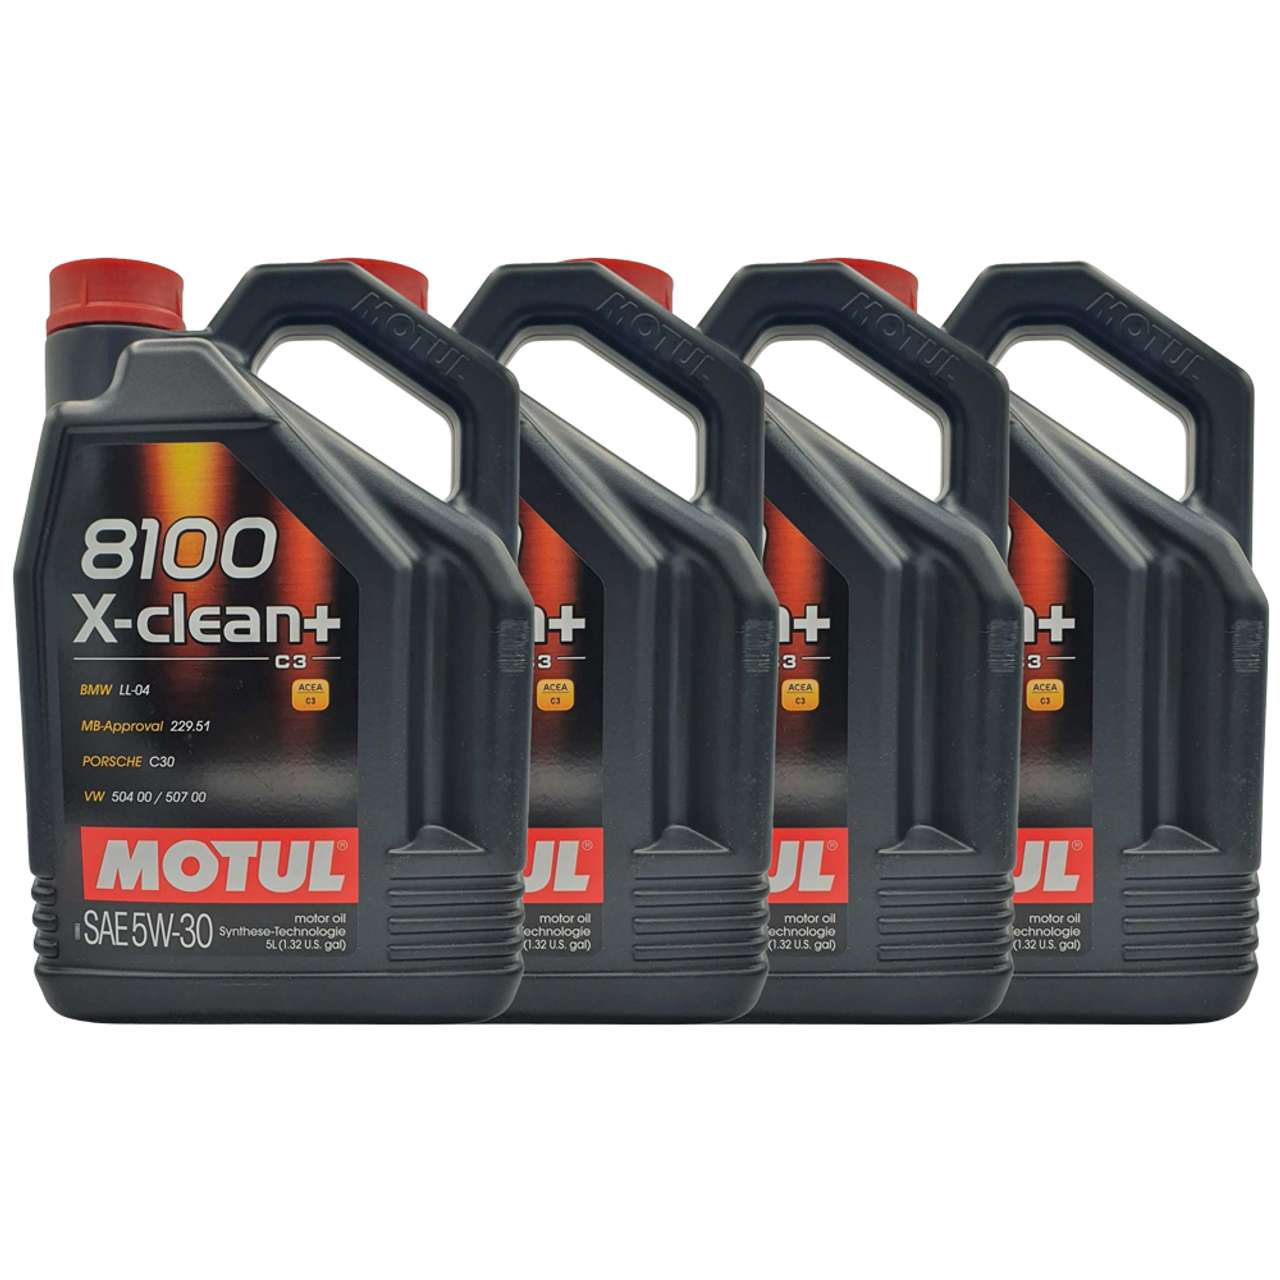 Motul 8100 X-clean+ 5W-30 4x5 Liter